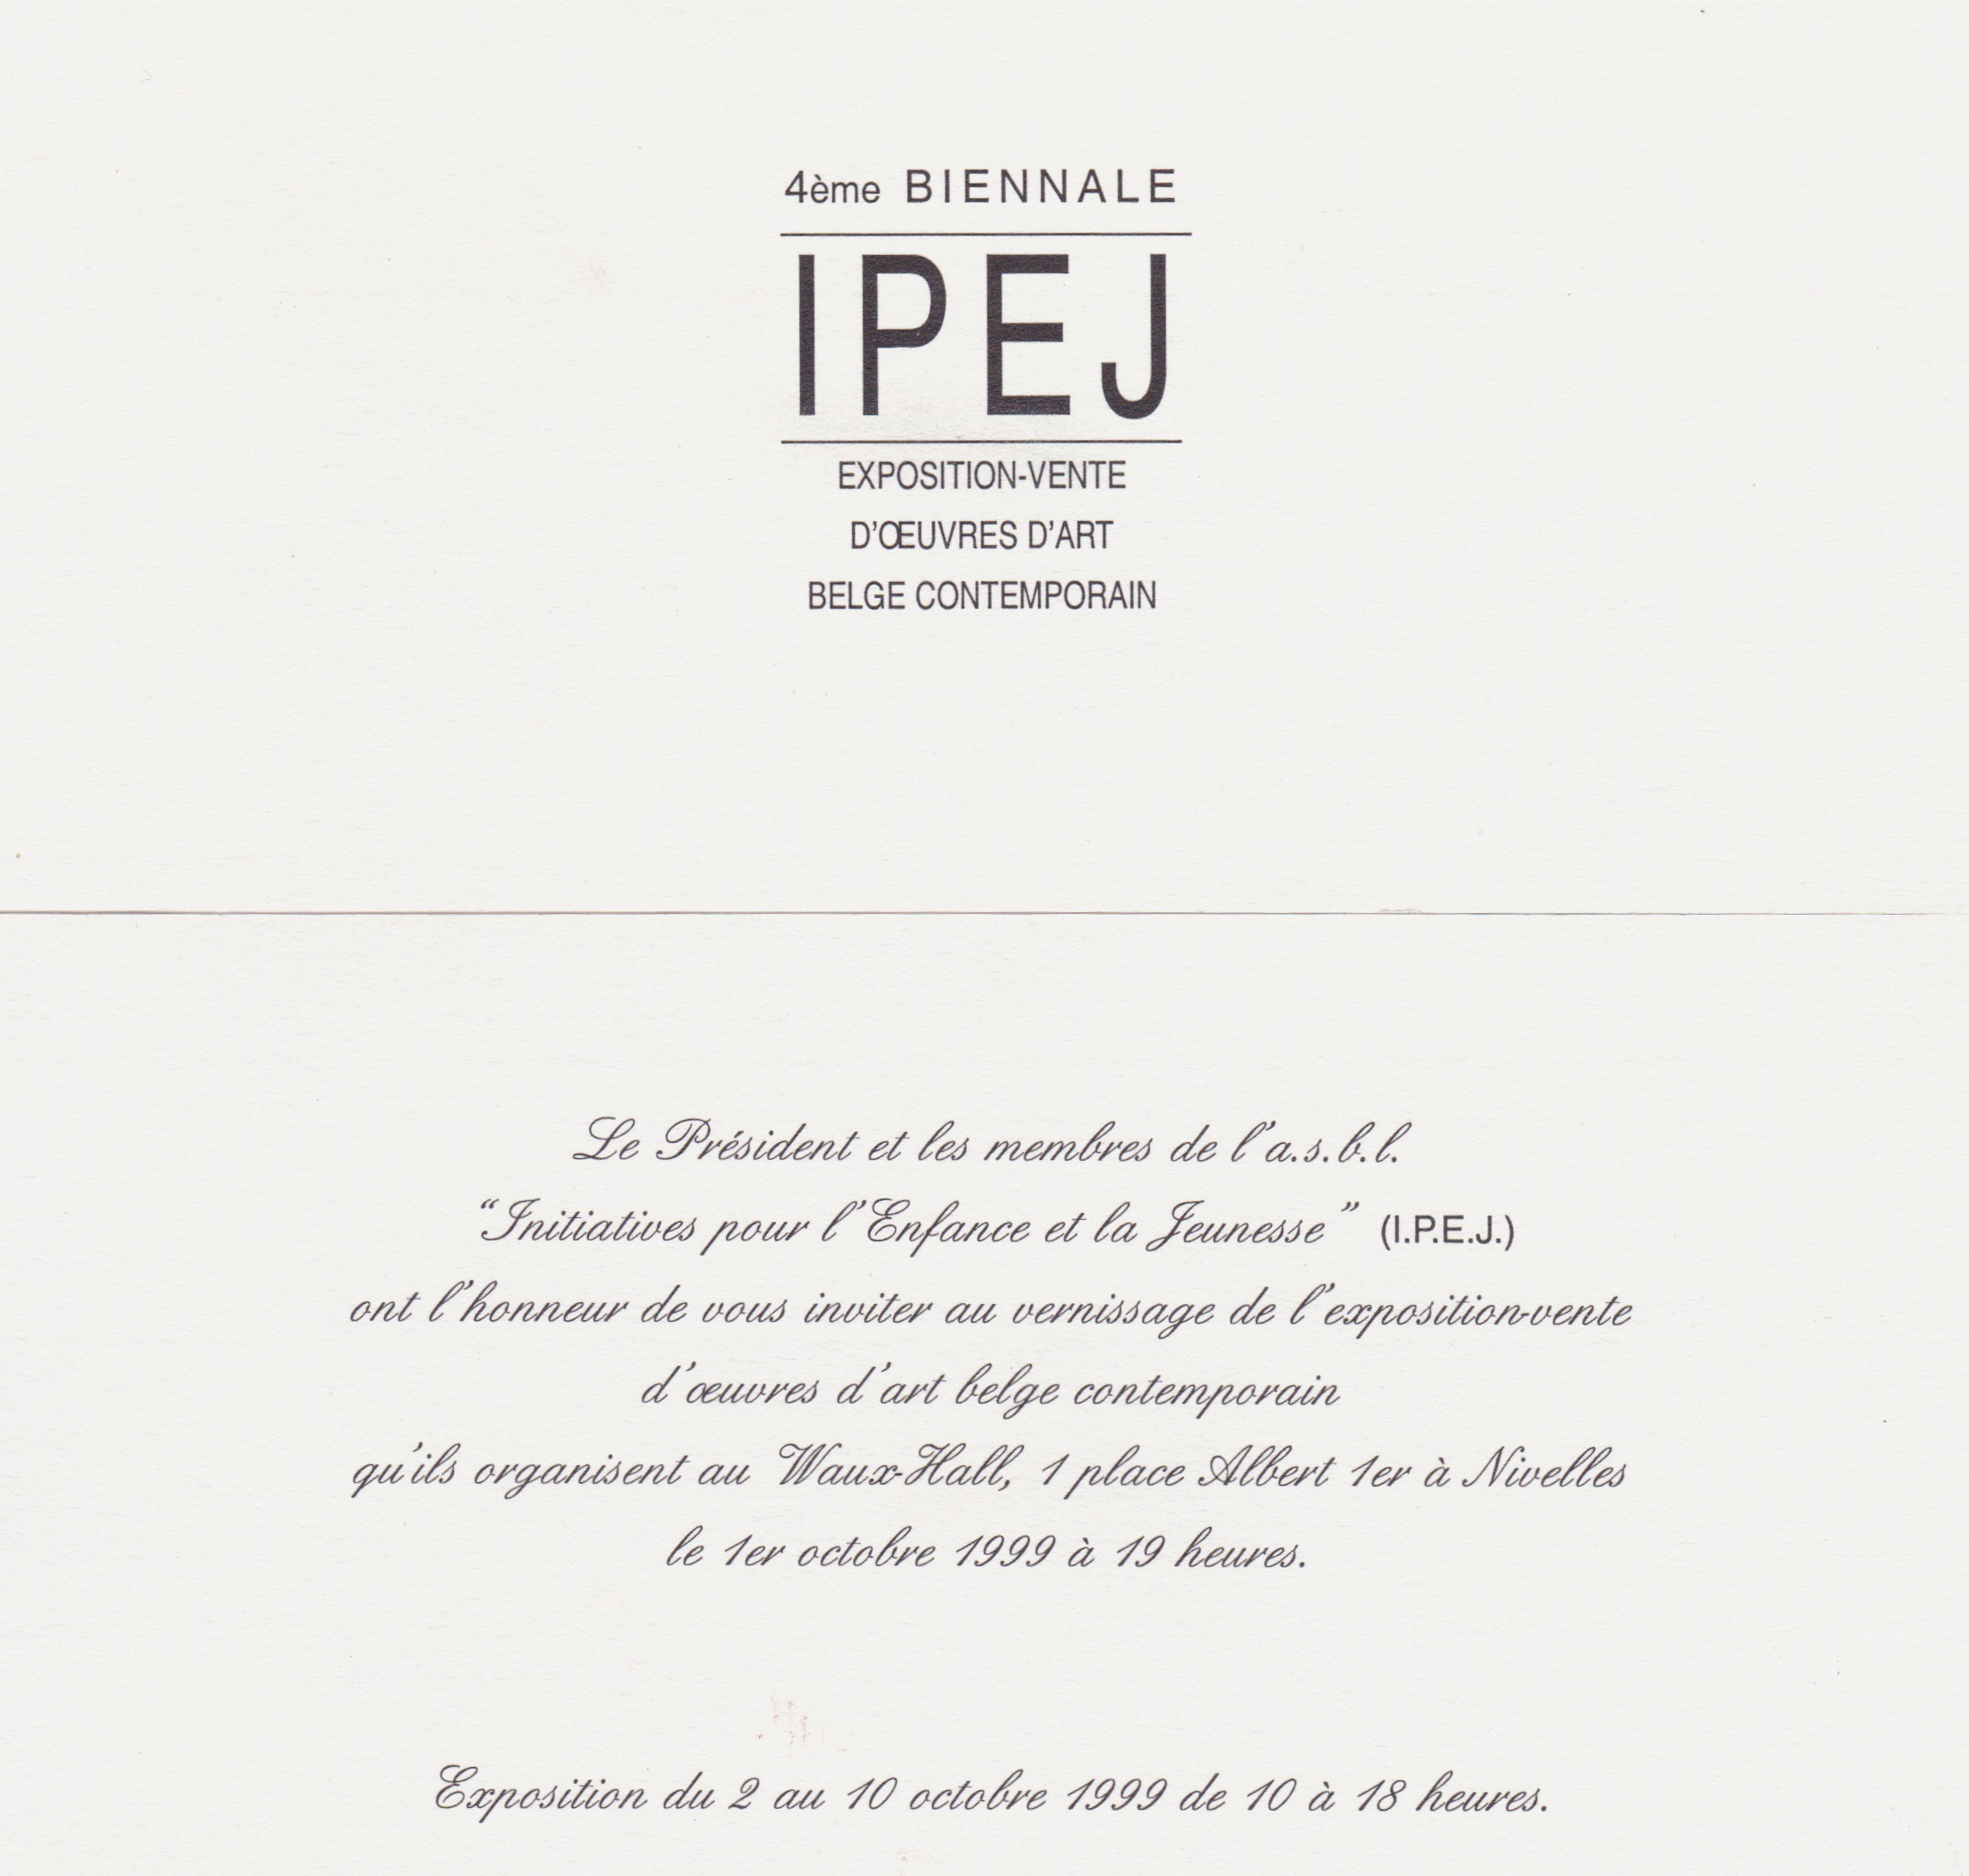 1999, 4ème Biennale IPEJ